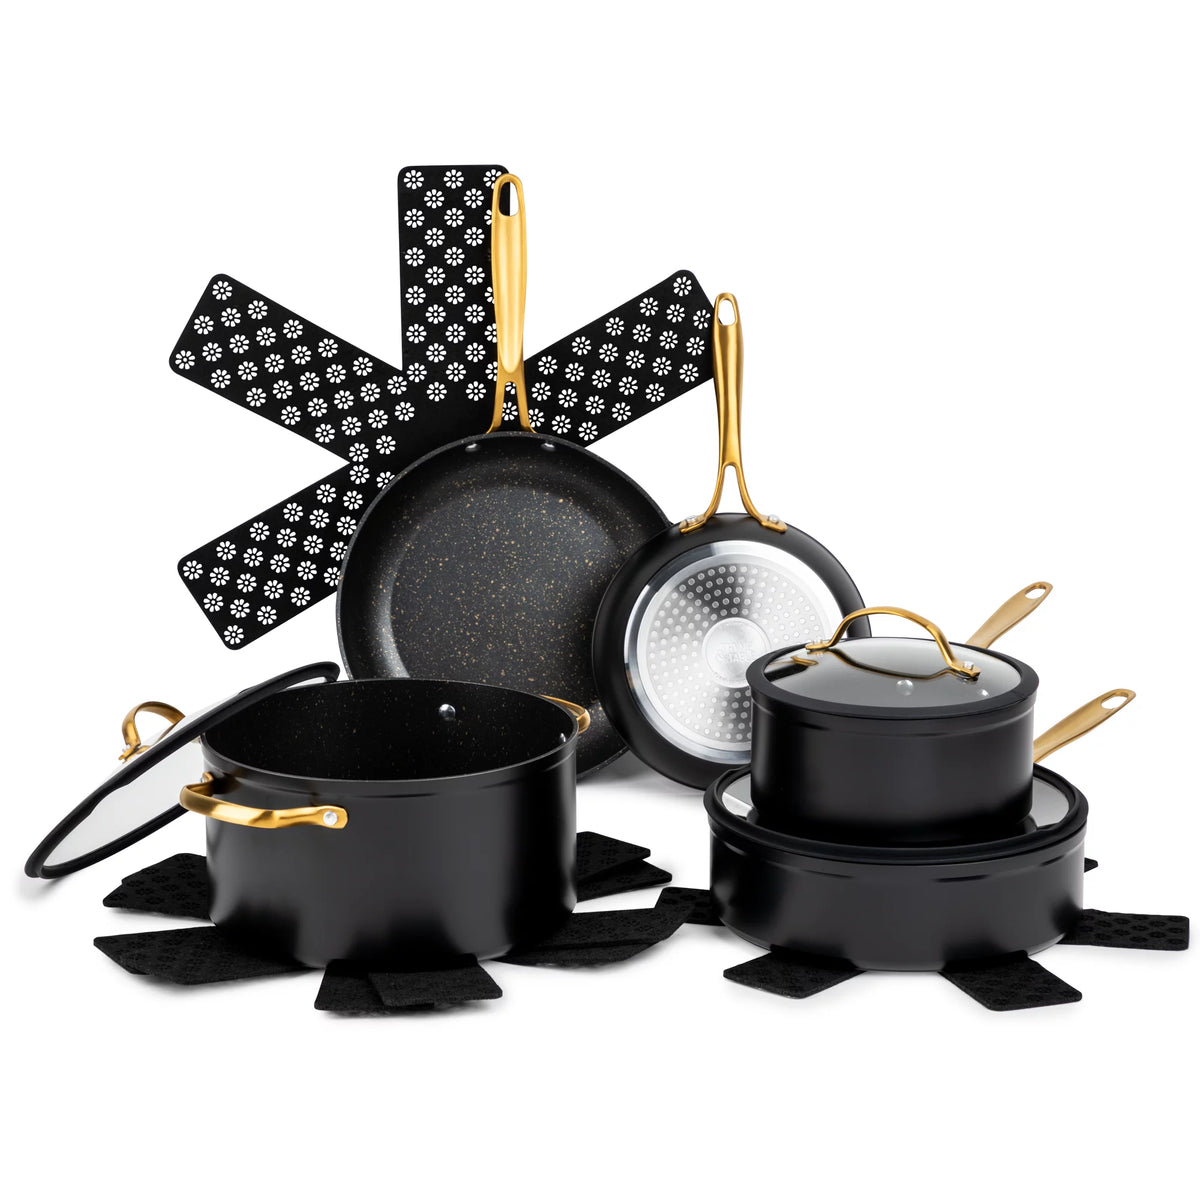 12-Piece Nonstick Cookware Set, Black & Gold